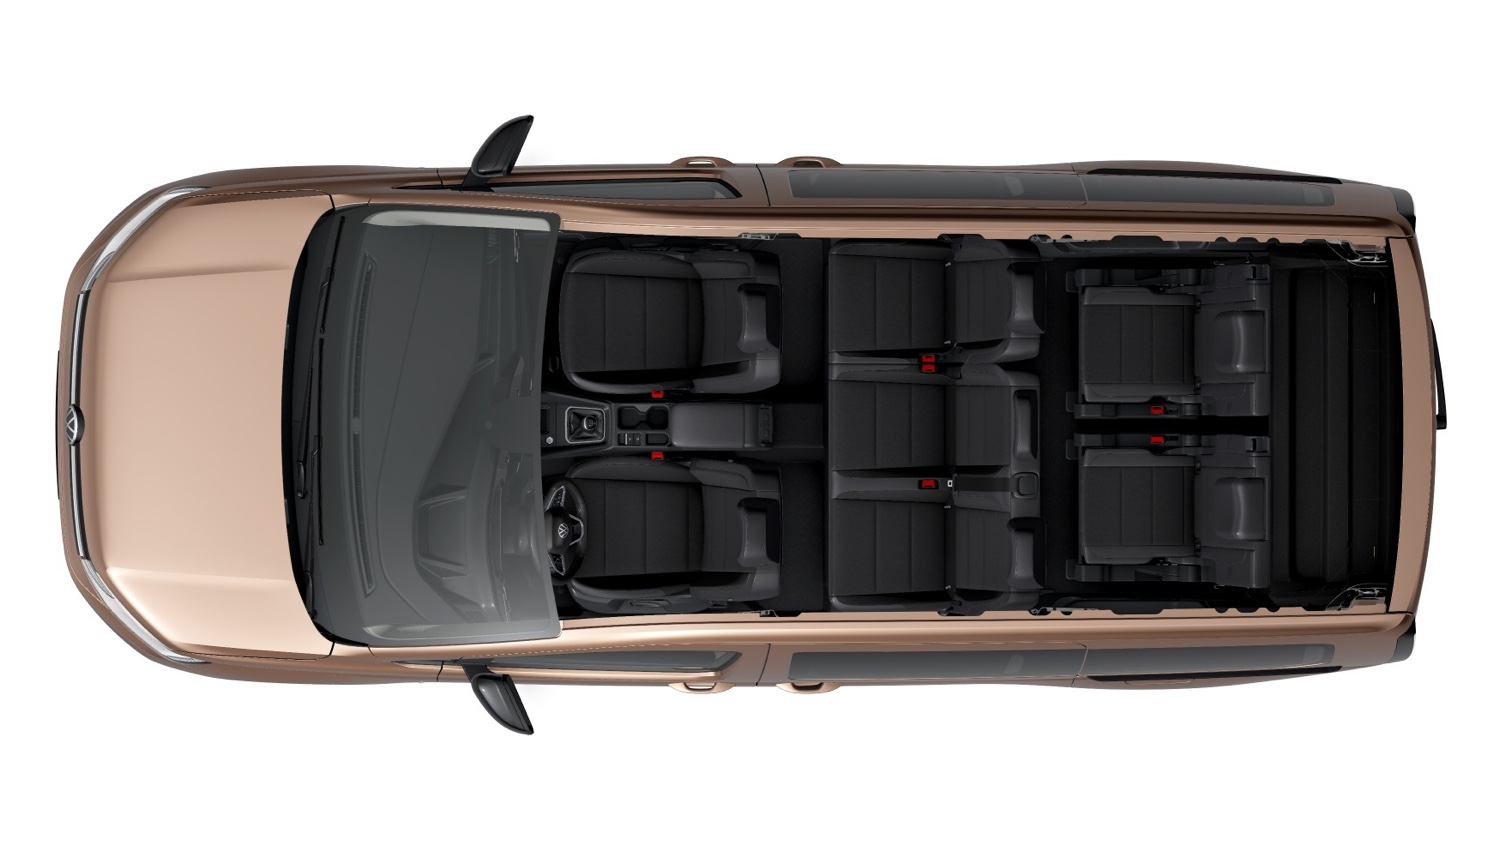 VW Caddy 7 míst - půdorys